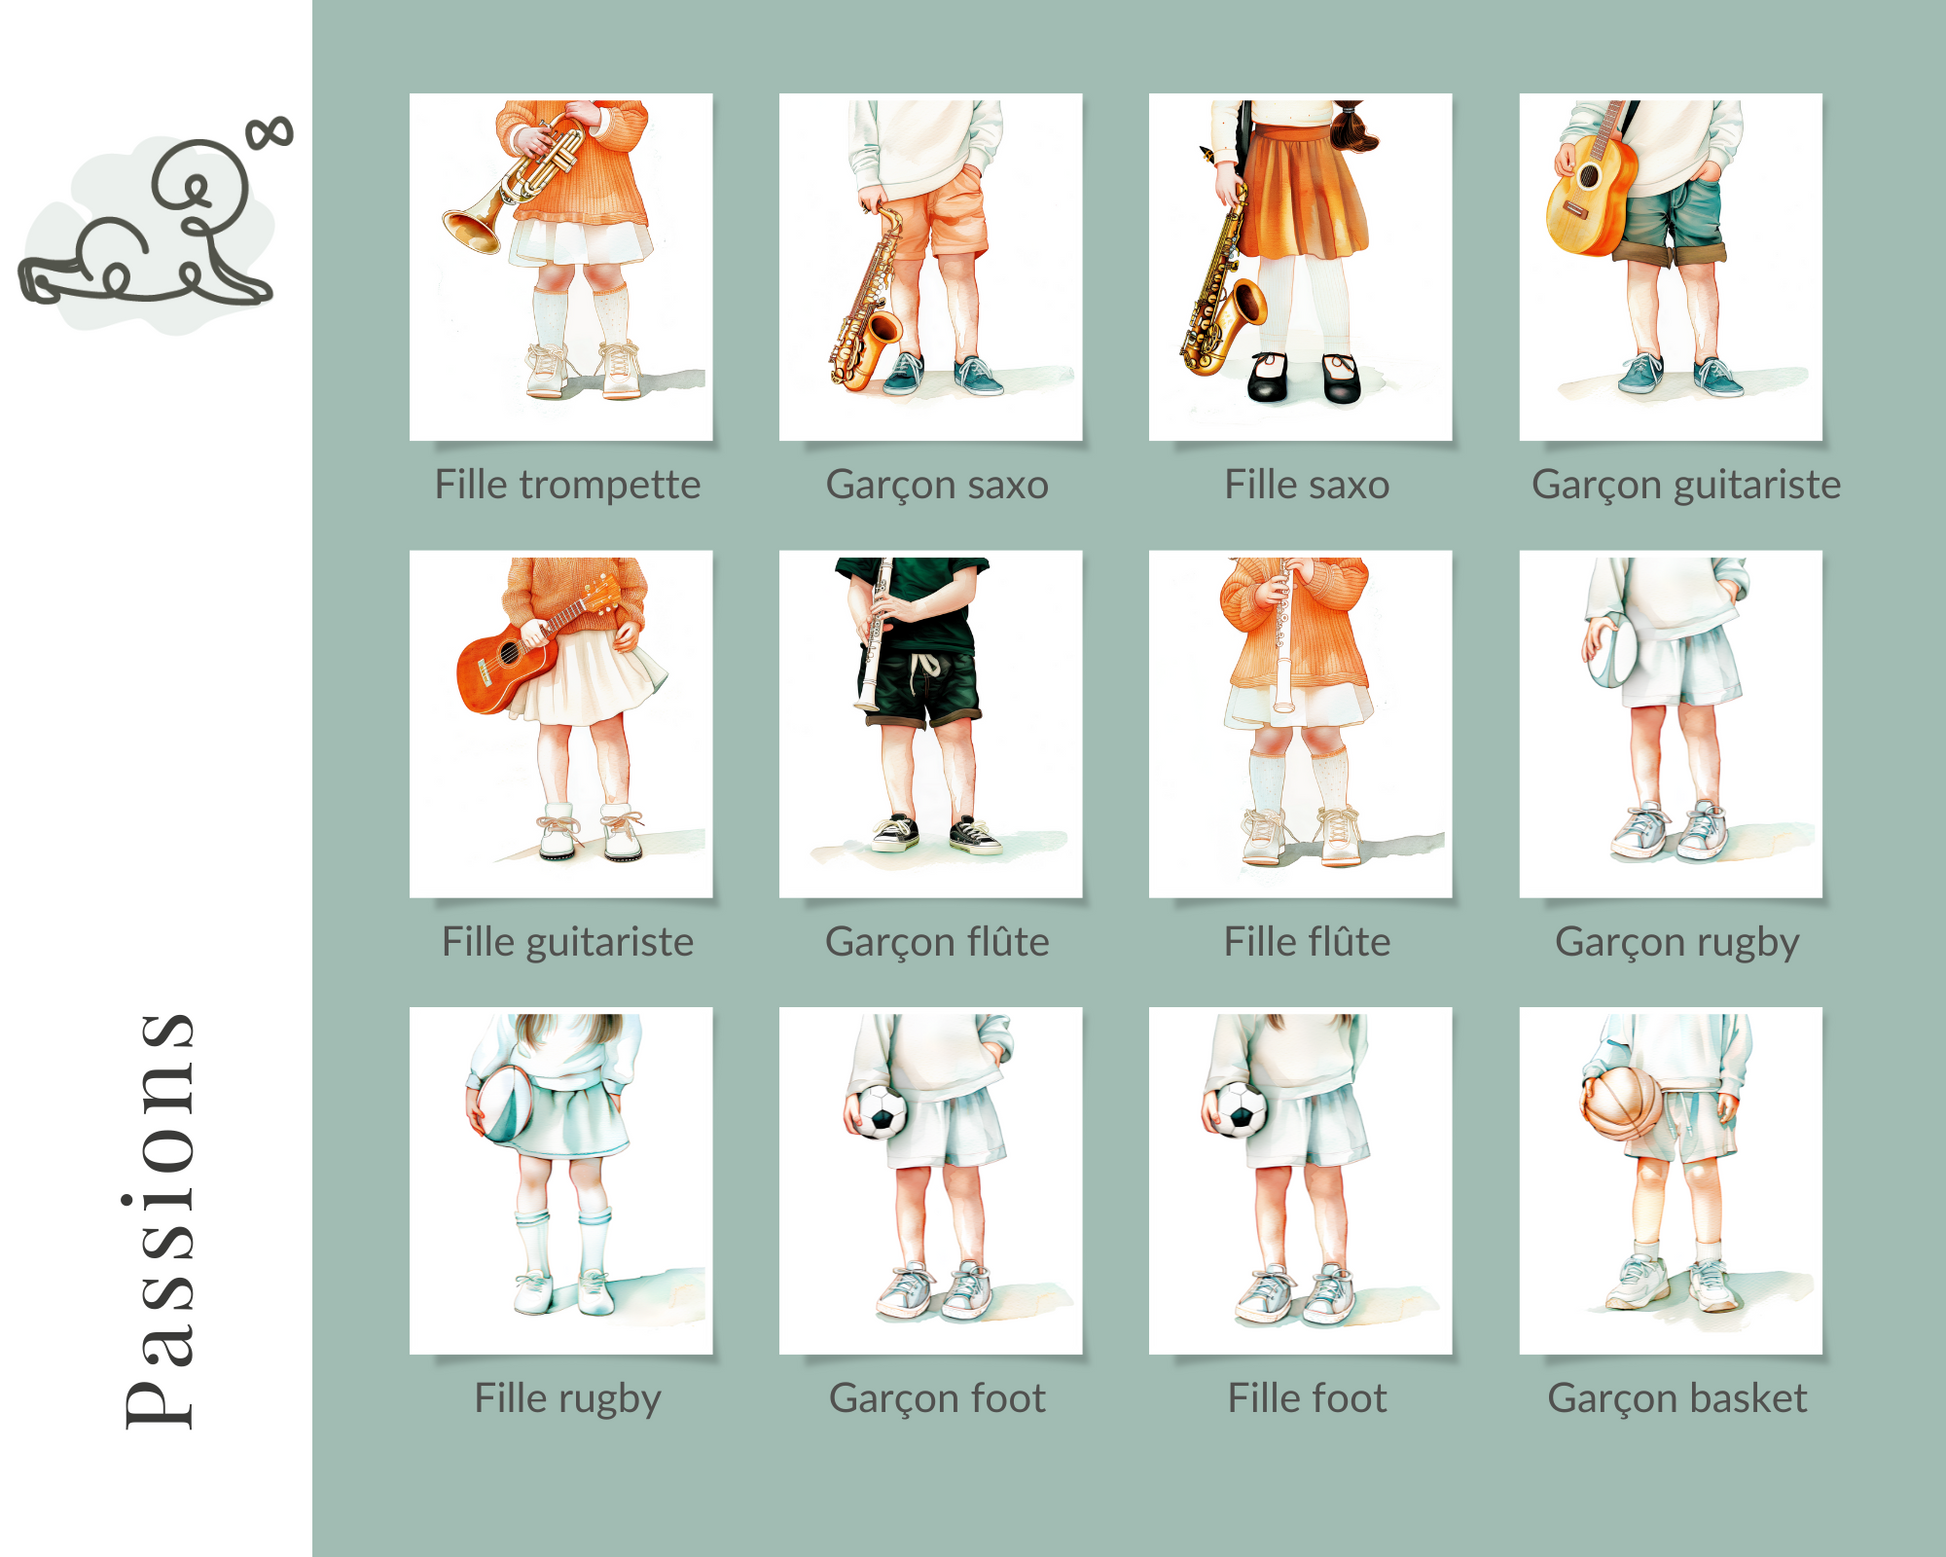 Illustration pour chambre d enfant, bébé, collection passions, piano, trompette, violon, flûte, saxophone, guitare, ukulele